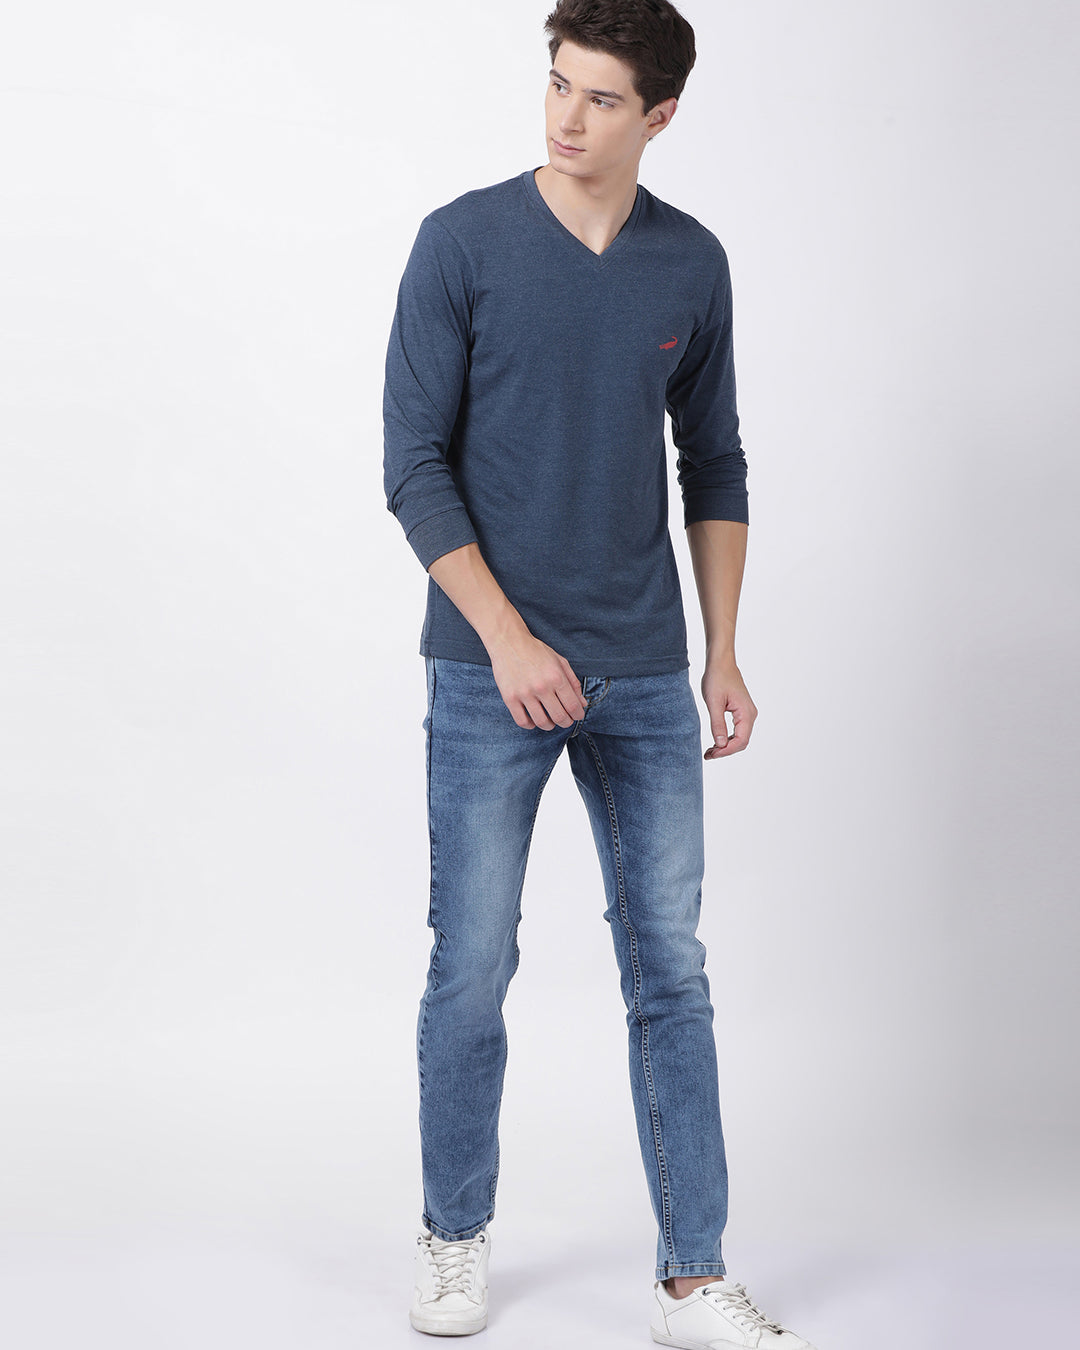 Men's Solid V Neck Full Sleeve Cotton T-Shirt - DENIM MELANGE